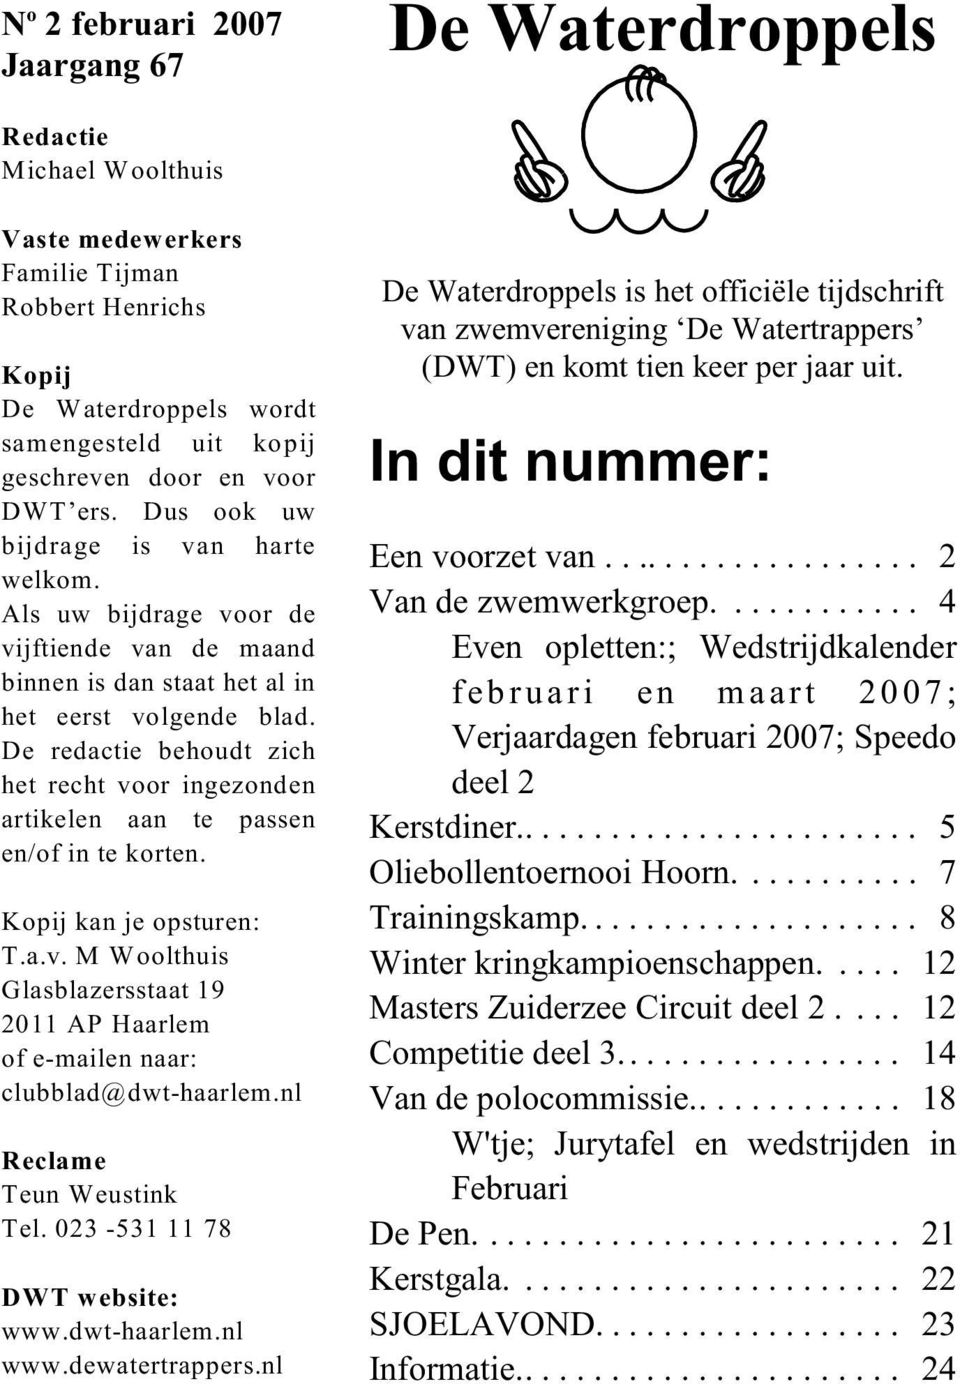 De redactie behoudt zich het recht voor ingezonden artikelen aan te passen en/of in te korten. Kopij kan je opsturen: T.a.v. M Woolthuis Glasblazersstaat 19 2011 AP Haarlem of e-mailen naar: clubblad@dwt-haarlem.